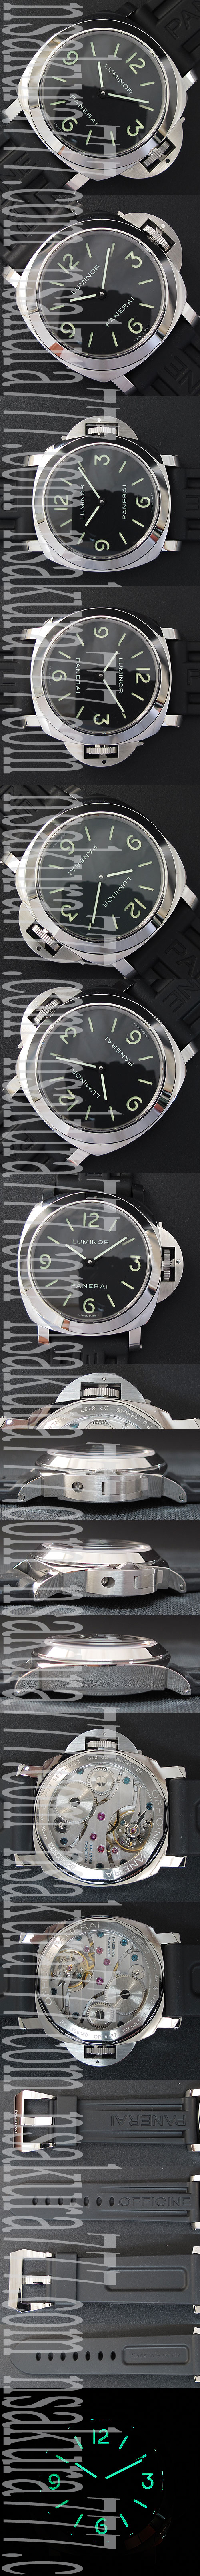 PANERAI  ルミノール マリーナ PAM000 コピー時計出来栄えの良い